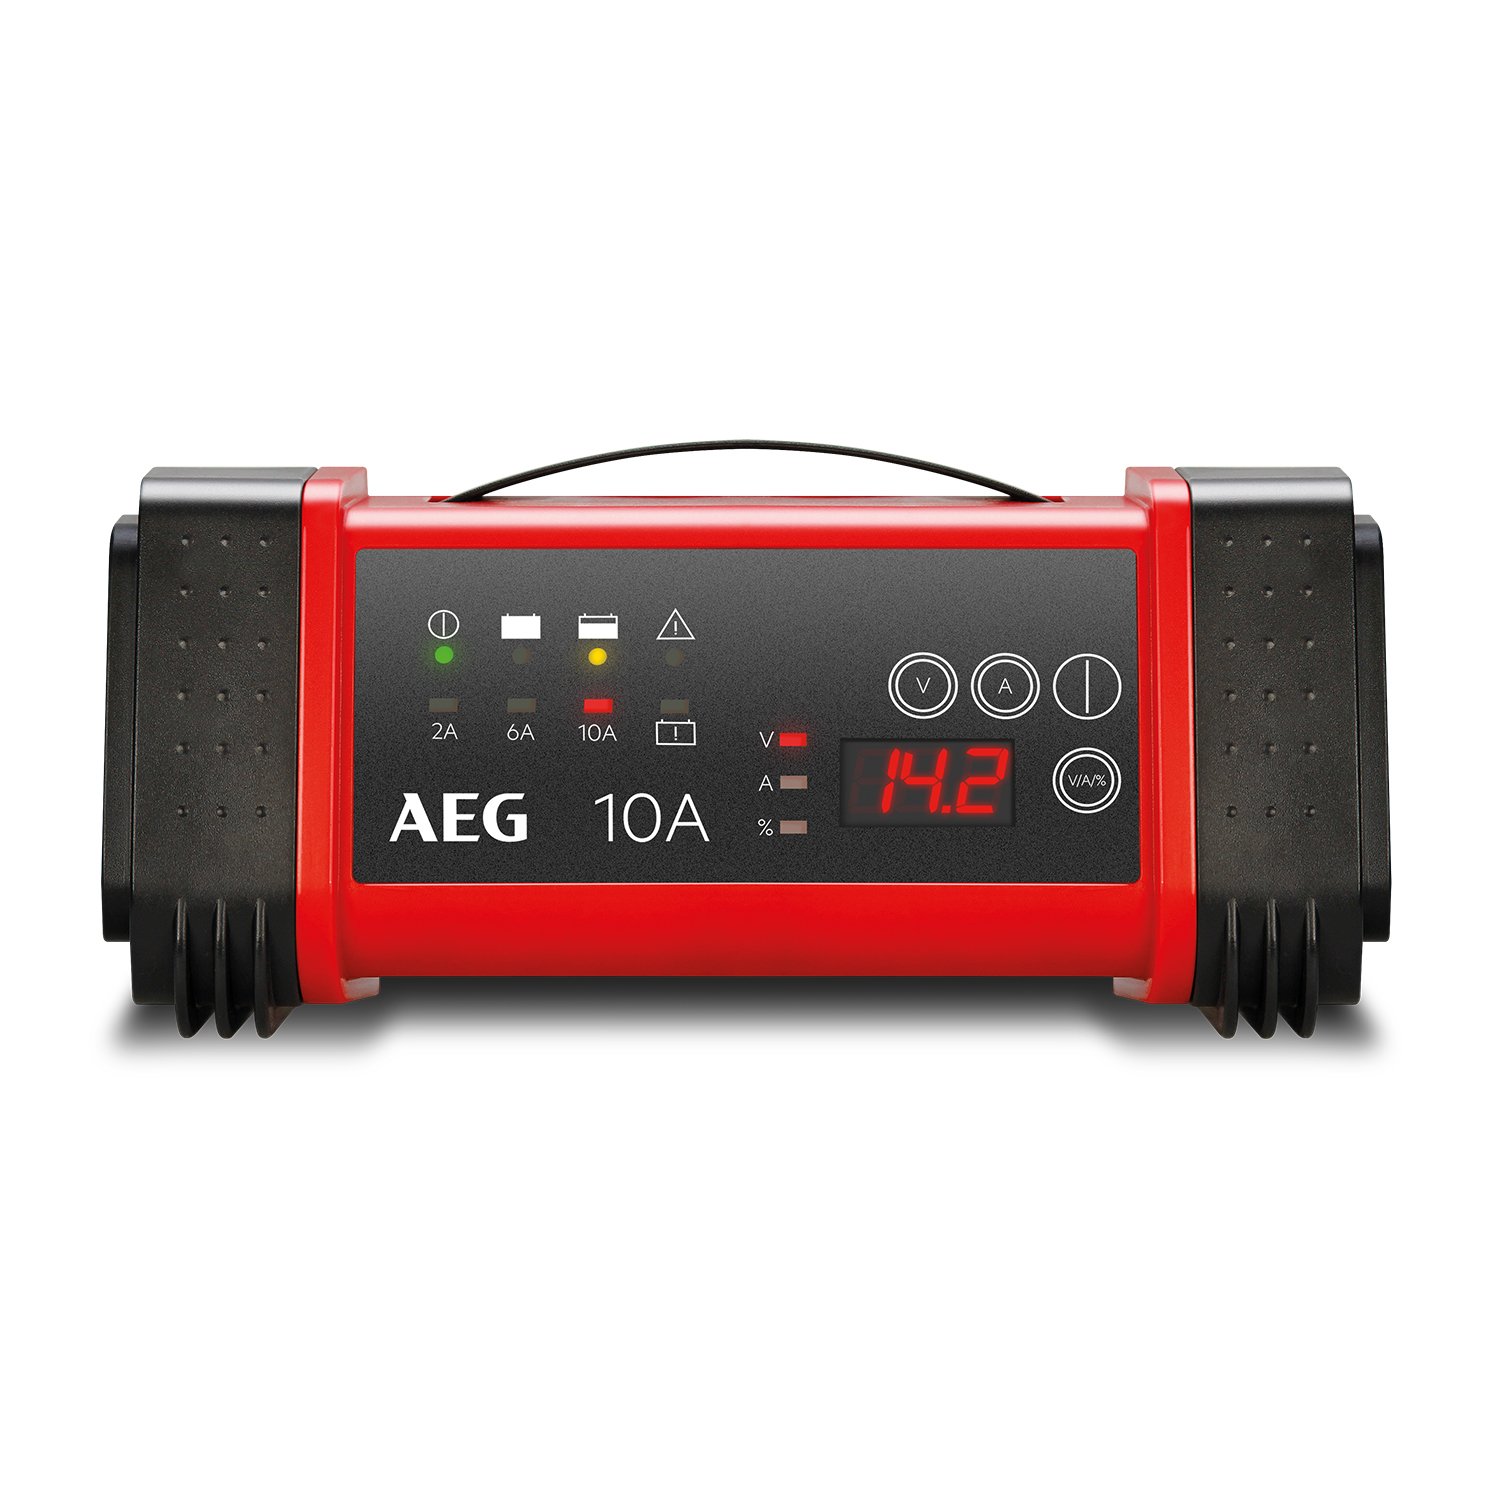 AEG Automotive 97024 Mikroprozessor Batterie Ladegerät LT 10 Ampere für 12 / 24 V, 9-stufig, Power-Supply, automatischer Temperaturausgleich von AEG